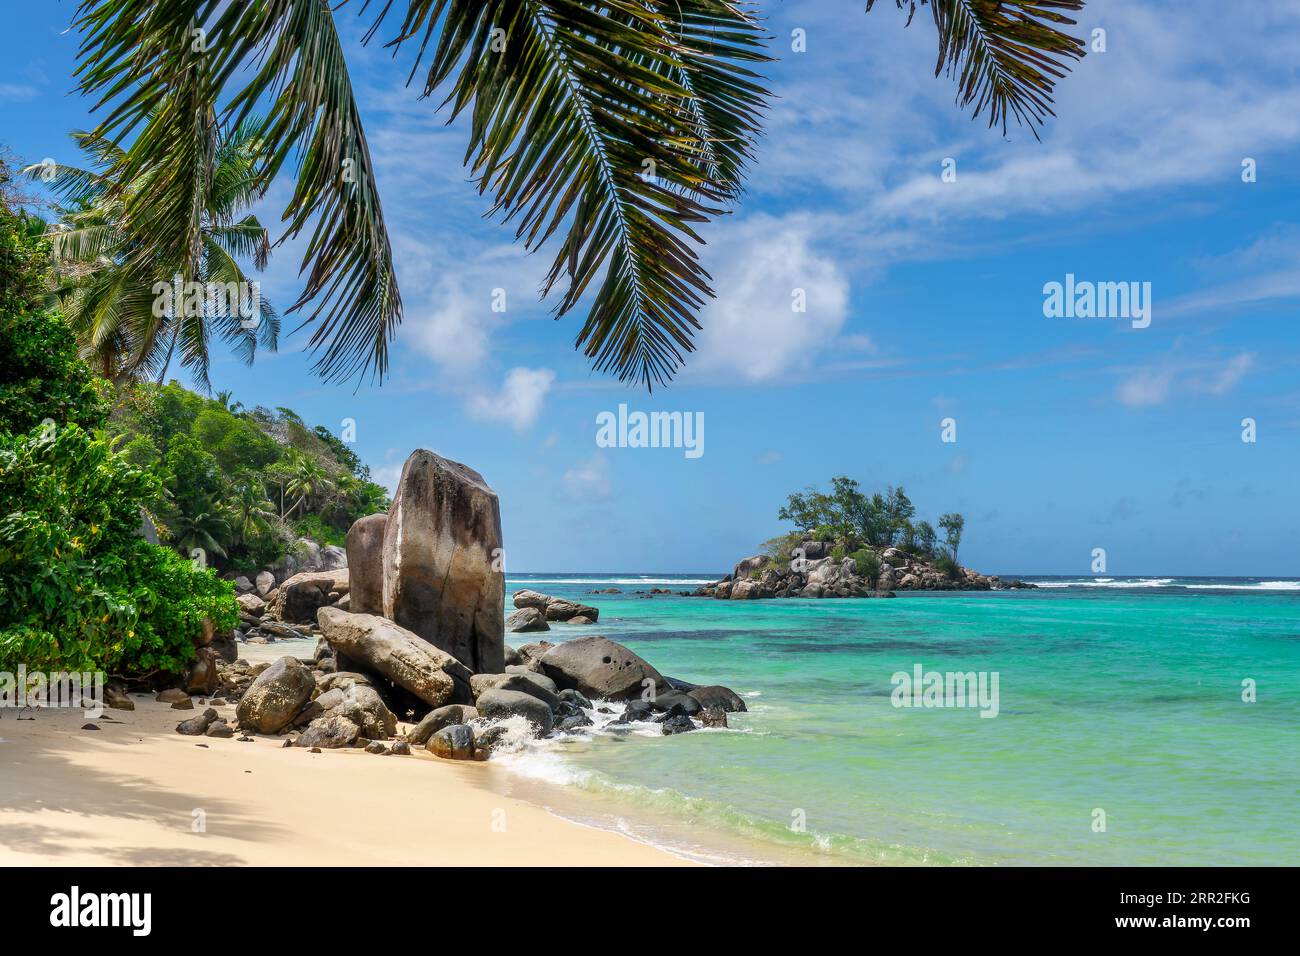 Felsen, Felsbrocken und Palmen am malerischen tropischen Sandstrand von Mahé, Seychellen Stockfoto